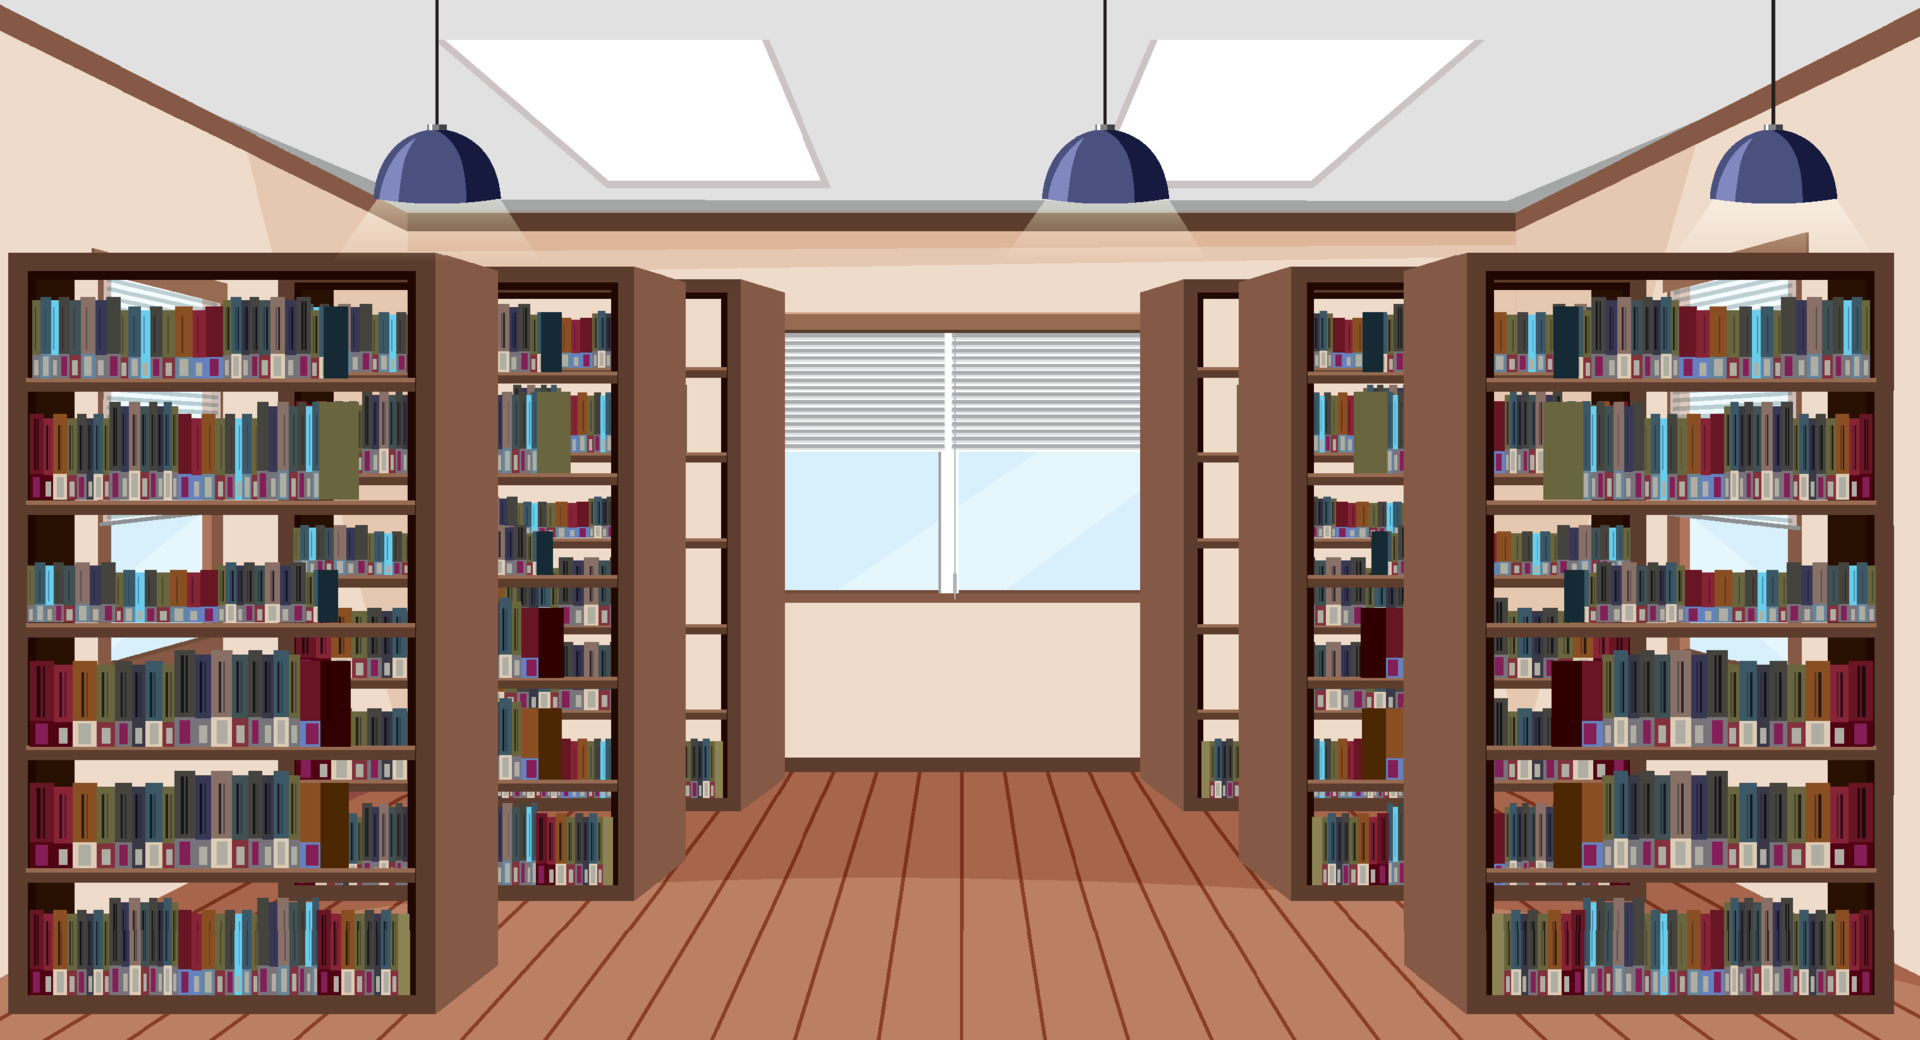 Thiết kế nội thất thư viện trống sẽ giúp bạn biến không gian nhà bạn thành một thư viện độc đáo, tuyệt vời nhất. Kệ sách tường, ghế ngồi thoải mái, ánh sáng tự nhiên và đặc biệt có giá sách tuyệt đẹp. Hãy tận hưởng phút giây thư giãn với những cuốn sách hay nhất tại ngôi nhà của bạn.